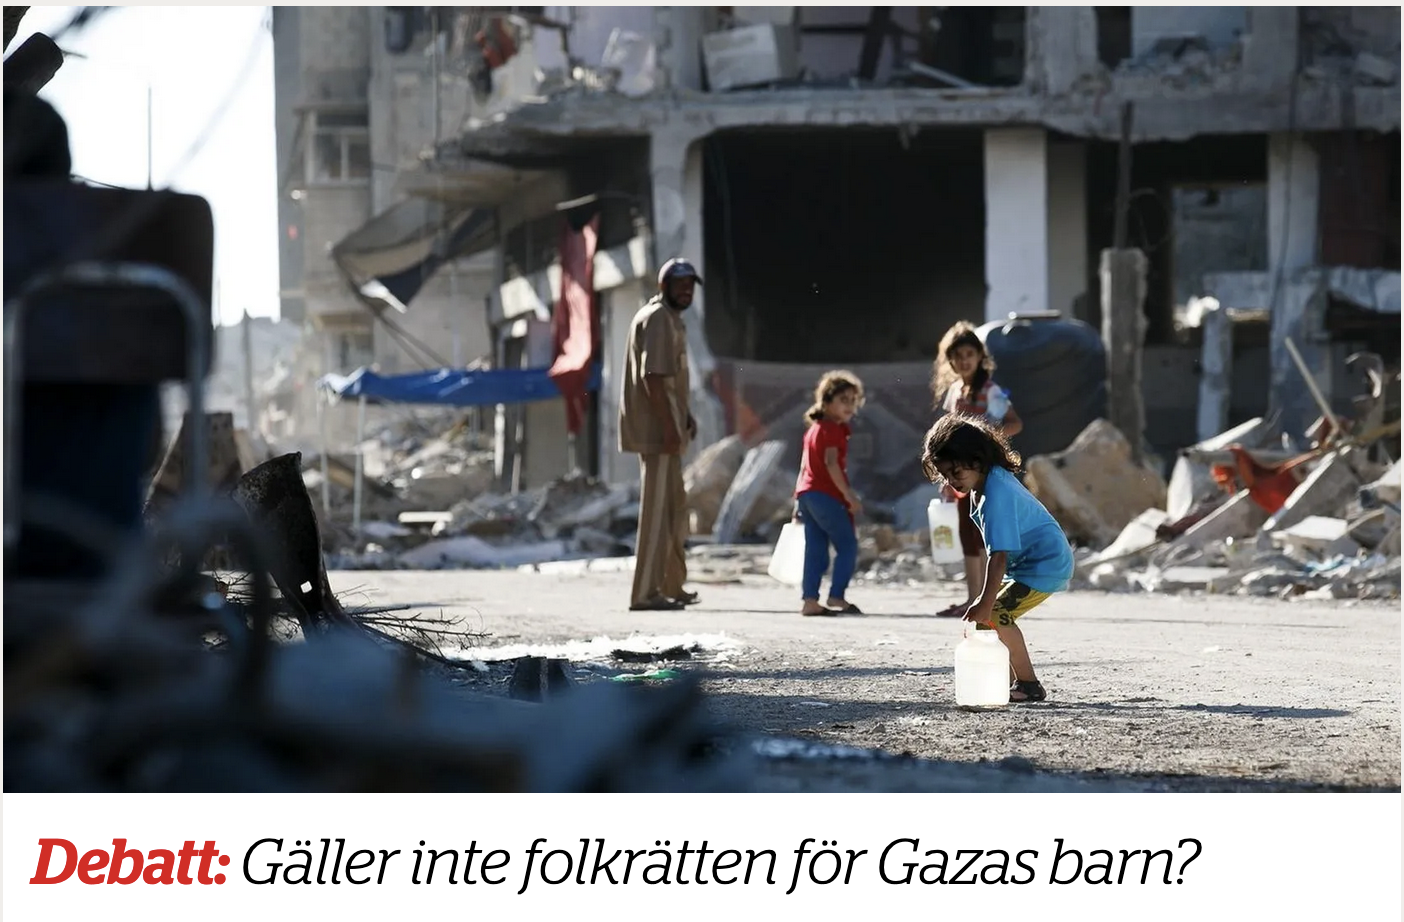 Debatt ETC: Gäller inte folkrätten för Gazas barn?